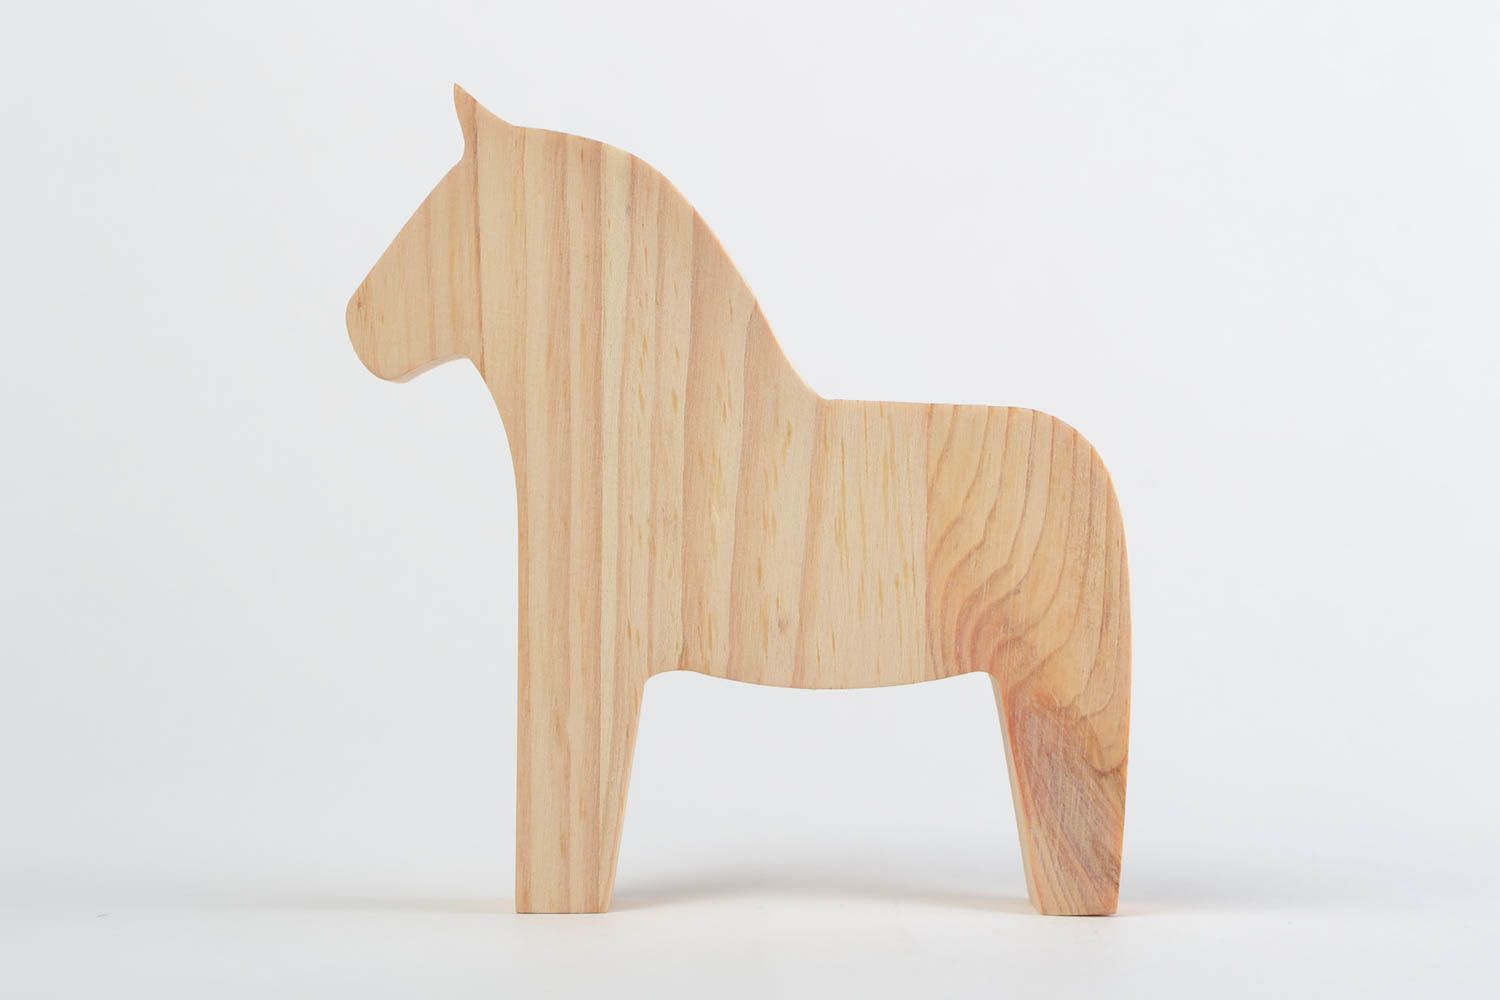 Игрушка из дерева ручной работы лошадка светлая маленького размера для детей фото 3